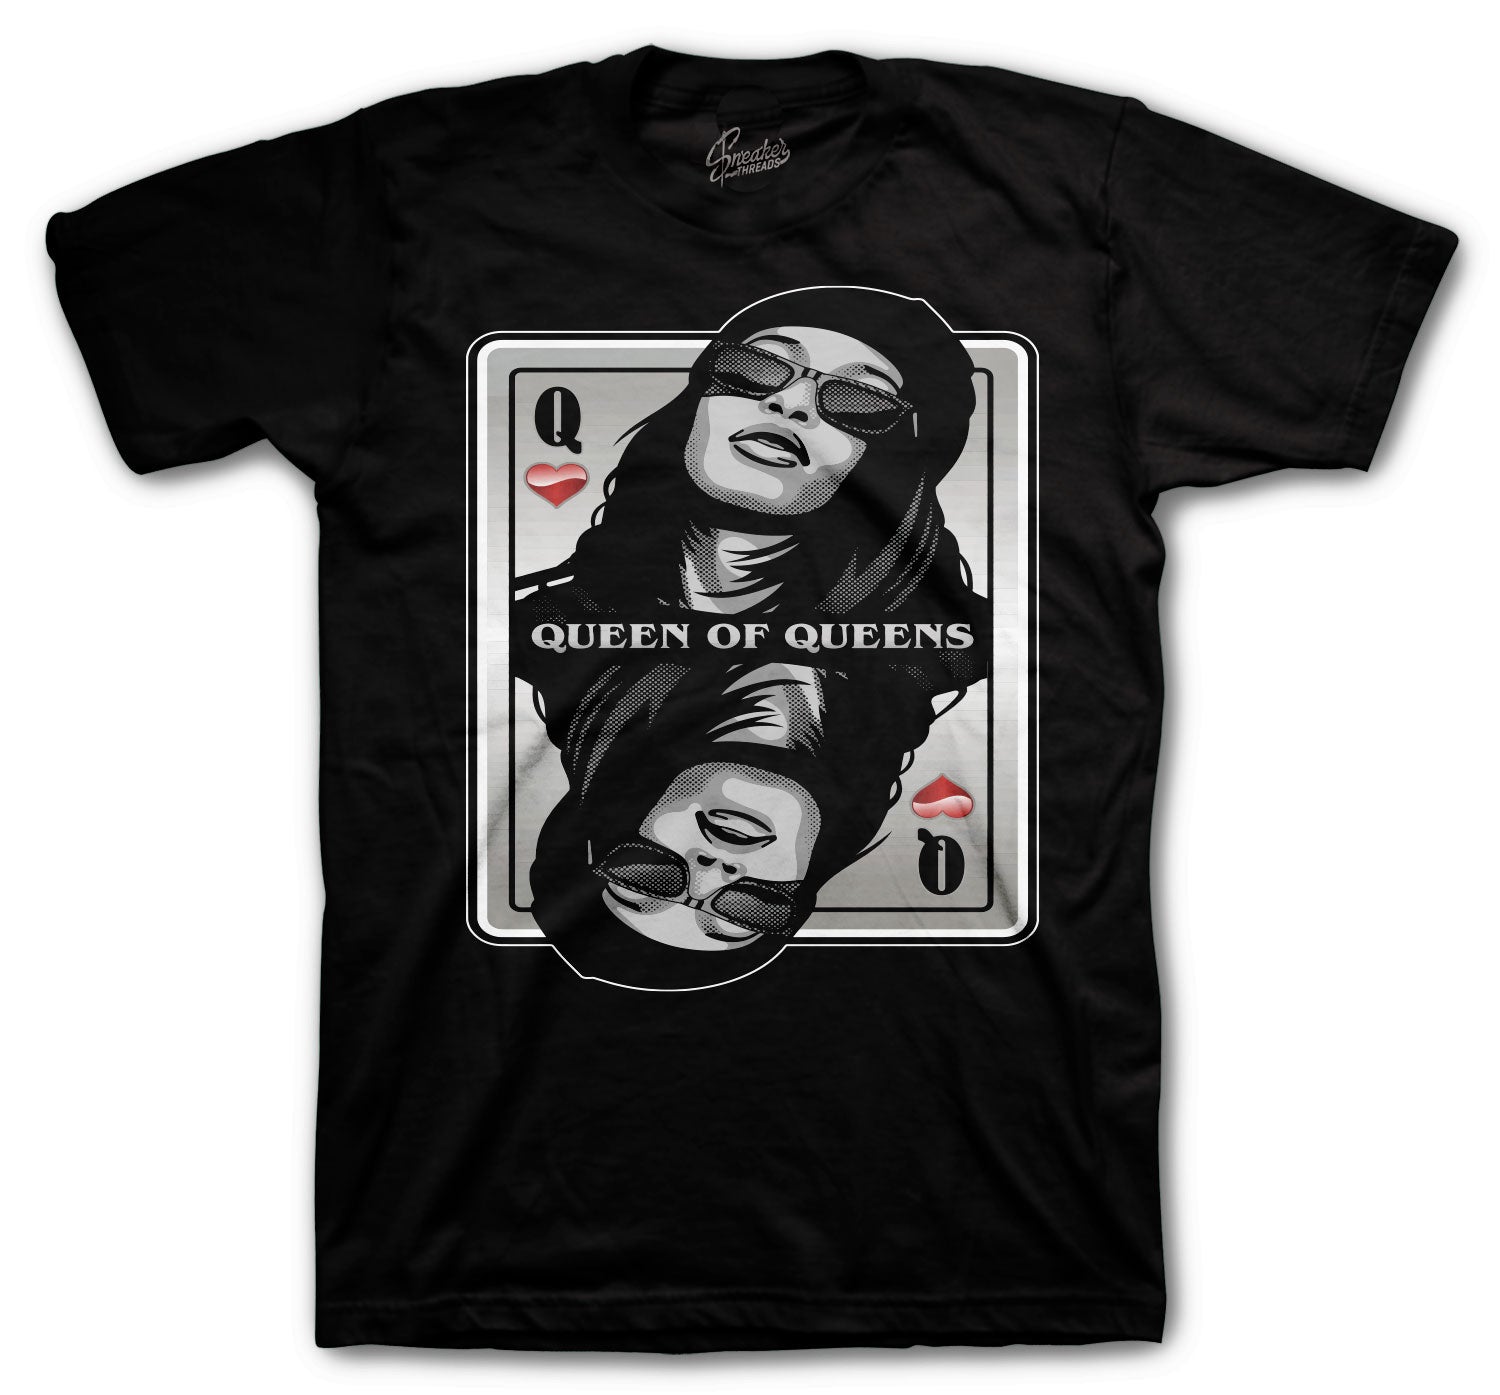 Retro 11 Jubilee Shirt - Queen Of Queens - Black